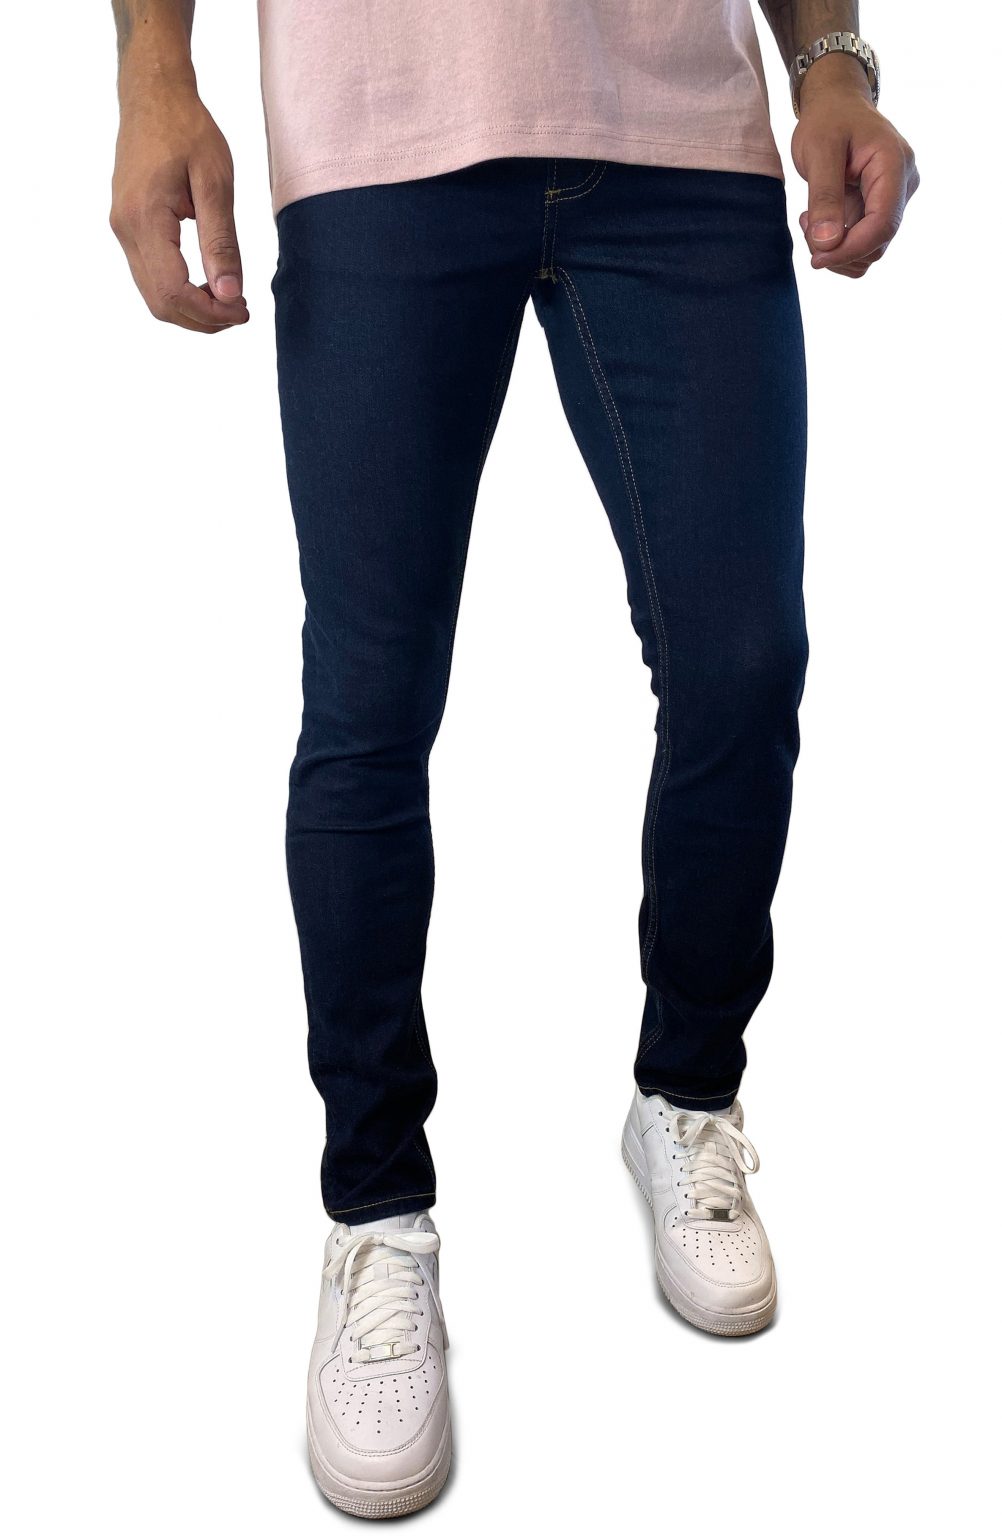 Men’s Topman Raw Denim Stretch Skinny Jeans, Size 28 x 32 - Blue | The ...